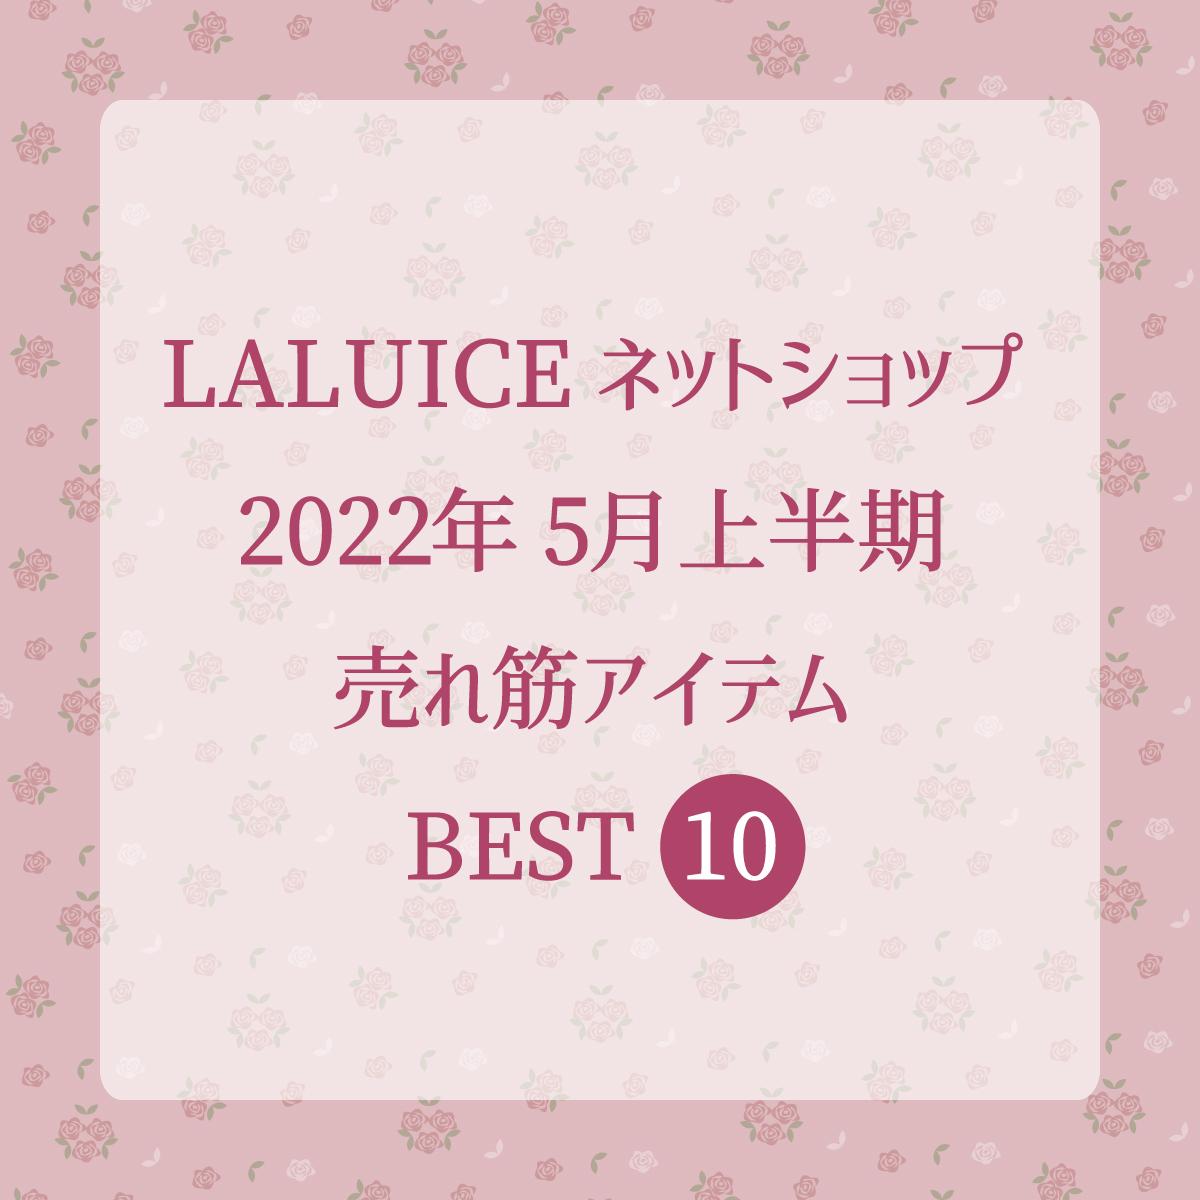 2022年5月上半期(5/1～5/15) LALUICEネットショップ売れ筋アイテム BEST10